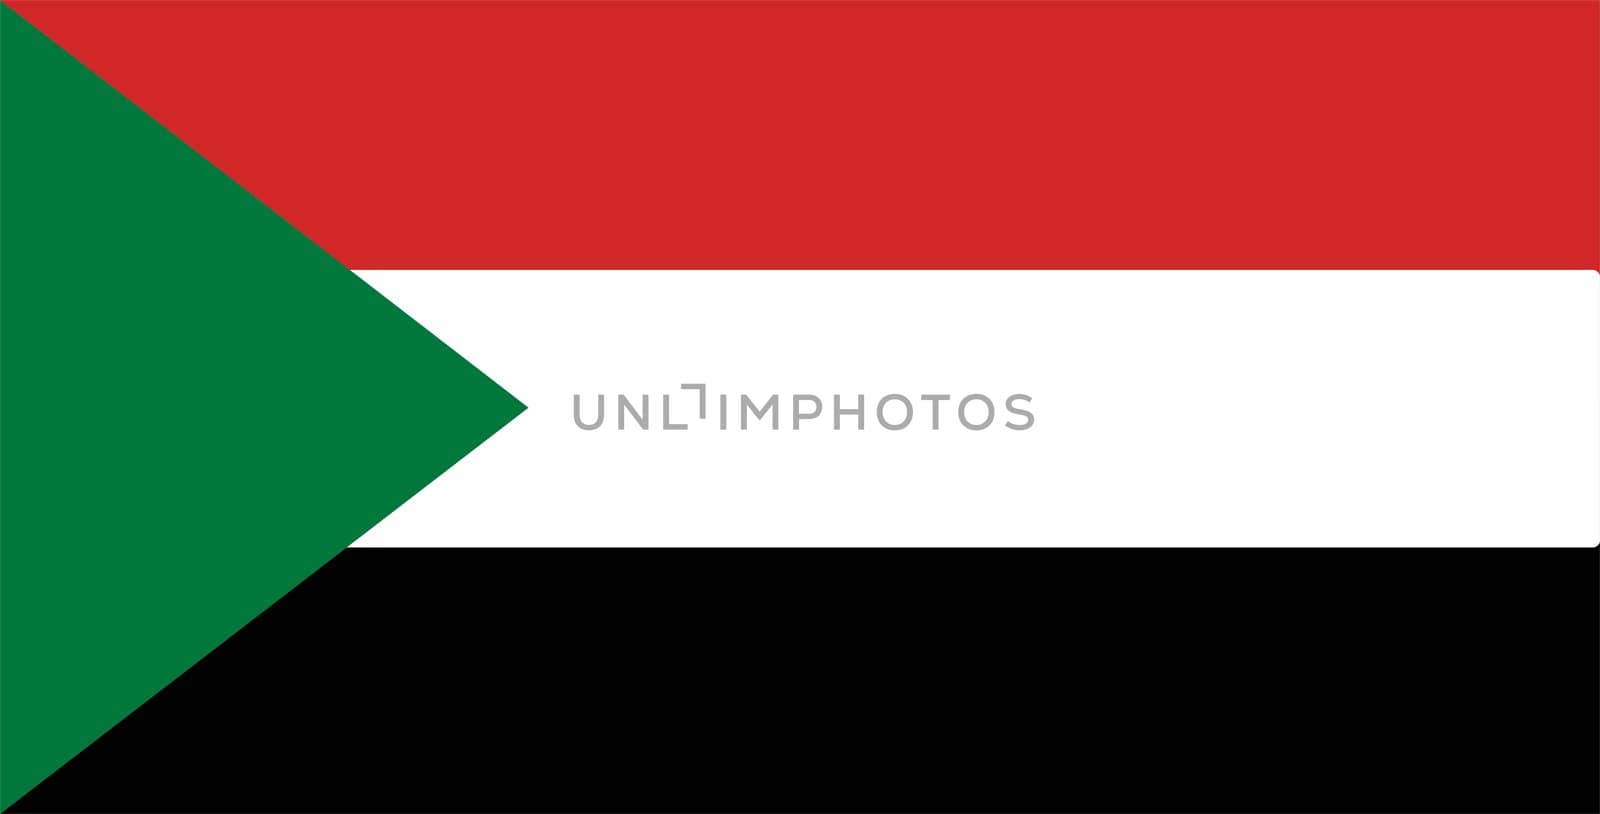 2D illustration of the flag of sudan